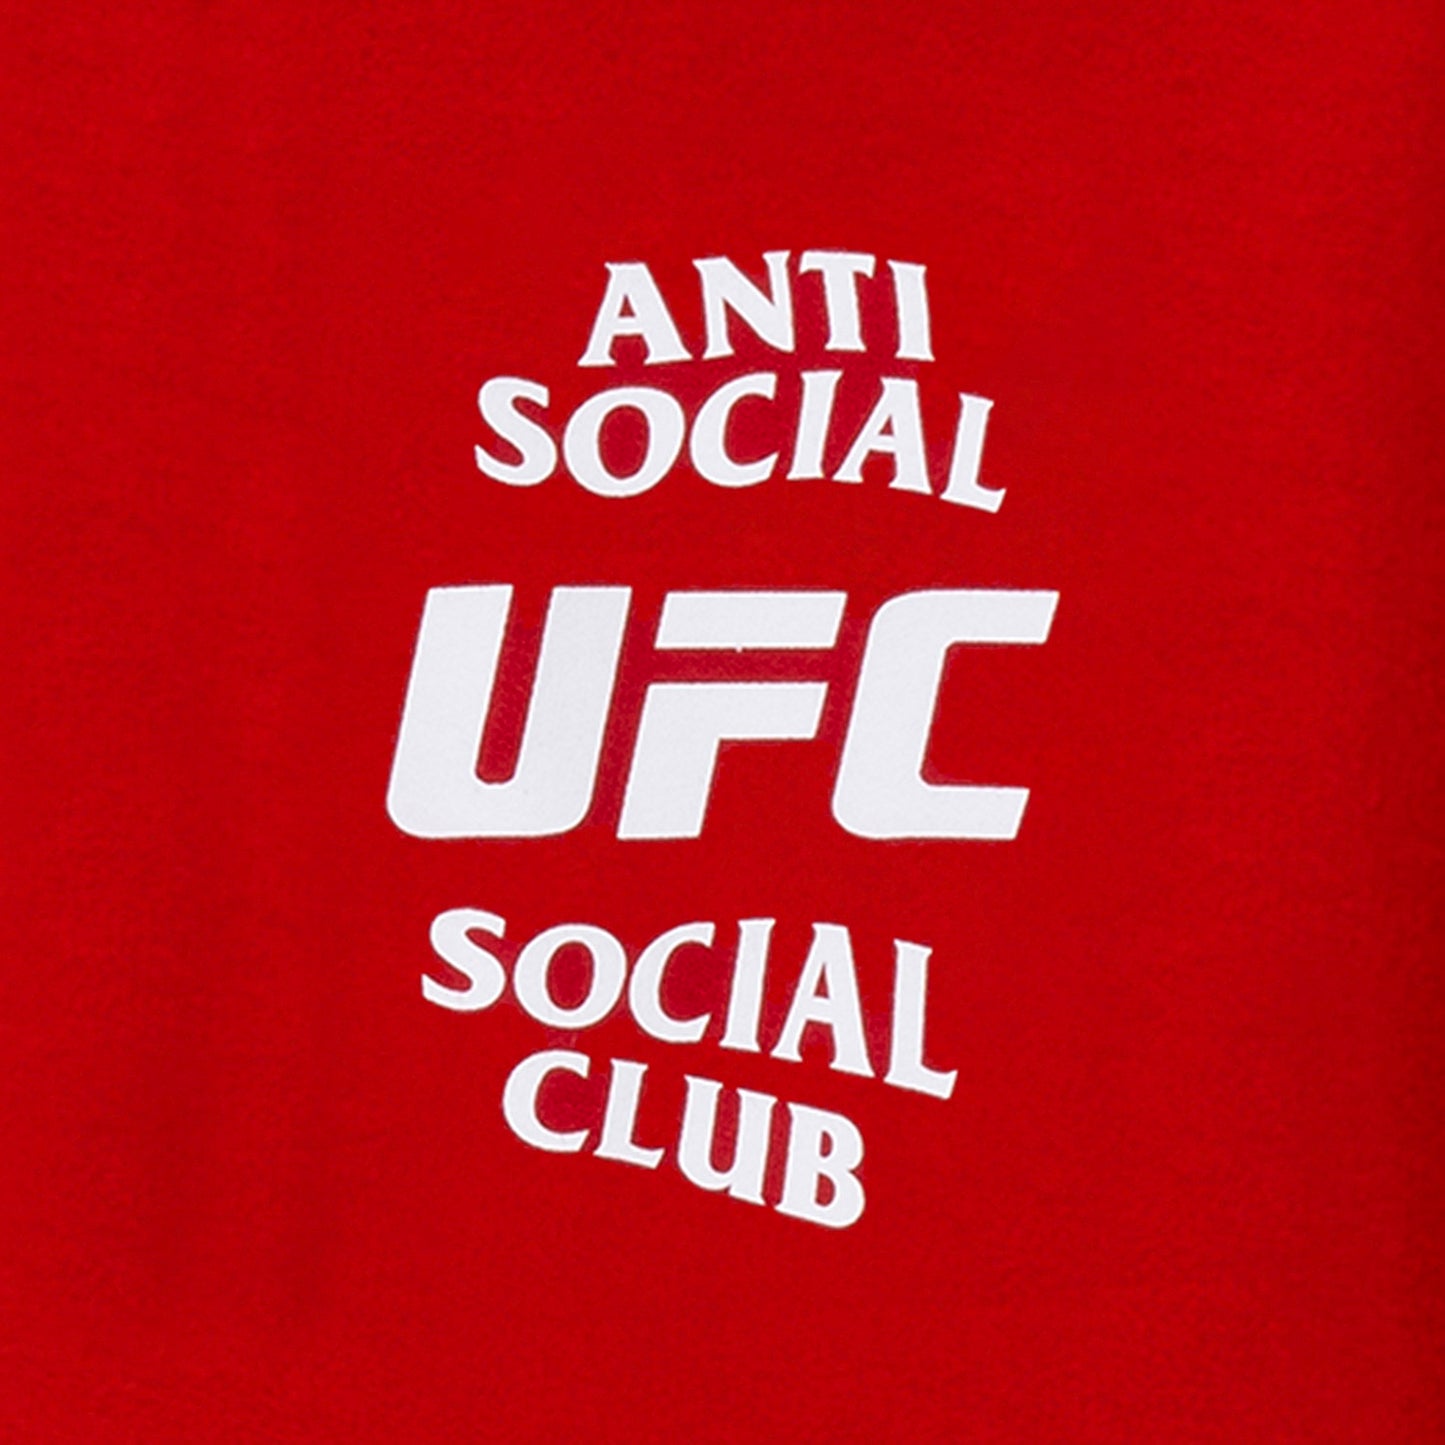 ASSC x UFC Self-Titled Hoodie - Red